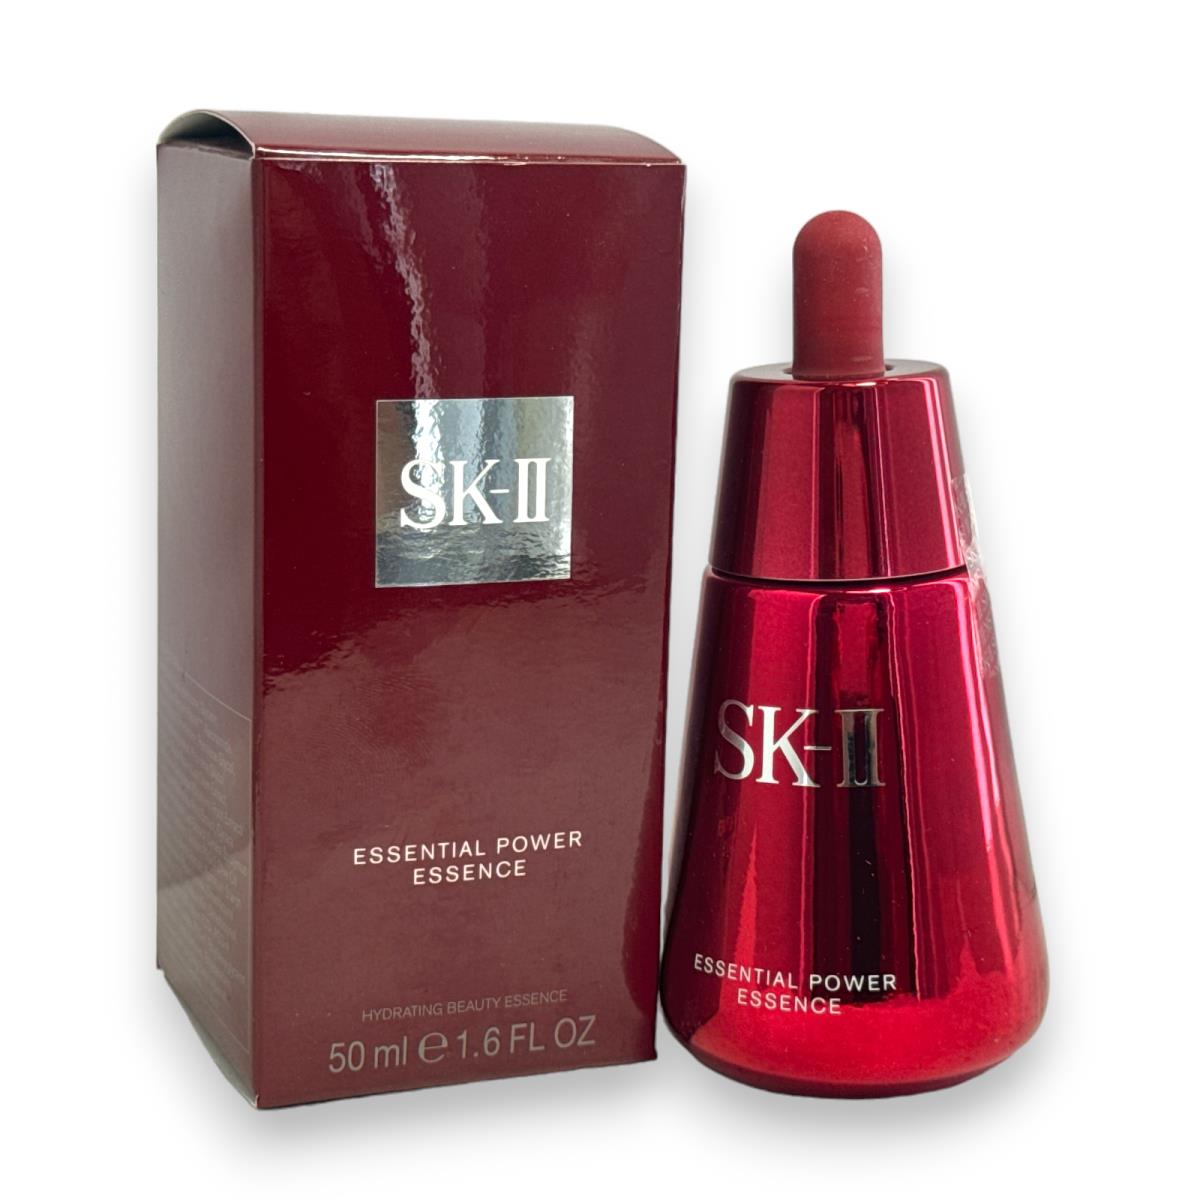 Sk-ii Essential Power Essence Hydrating Beauty Essence 50ml/1.6fl.oz